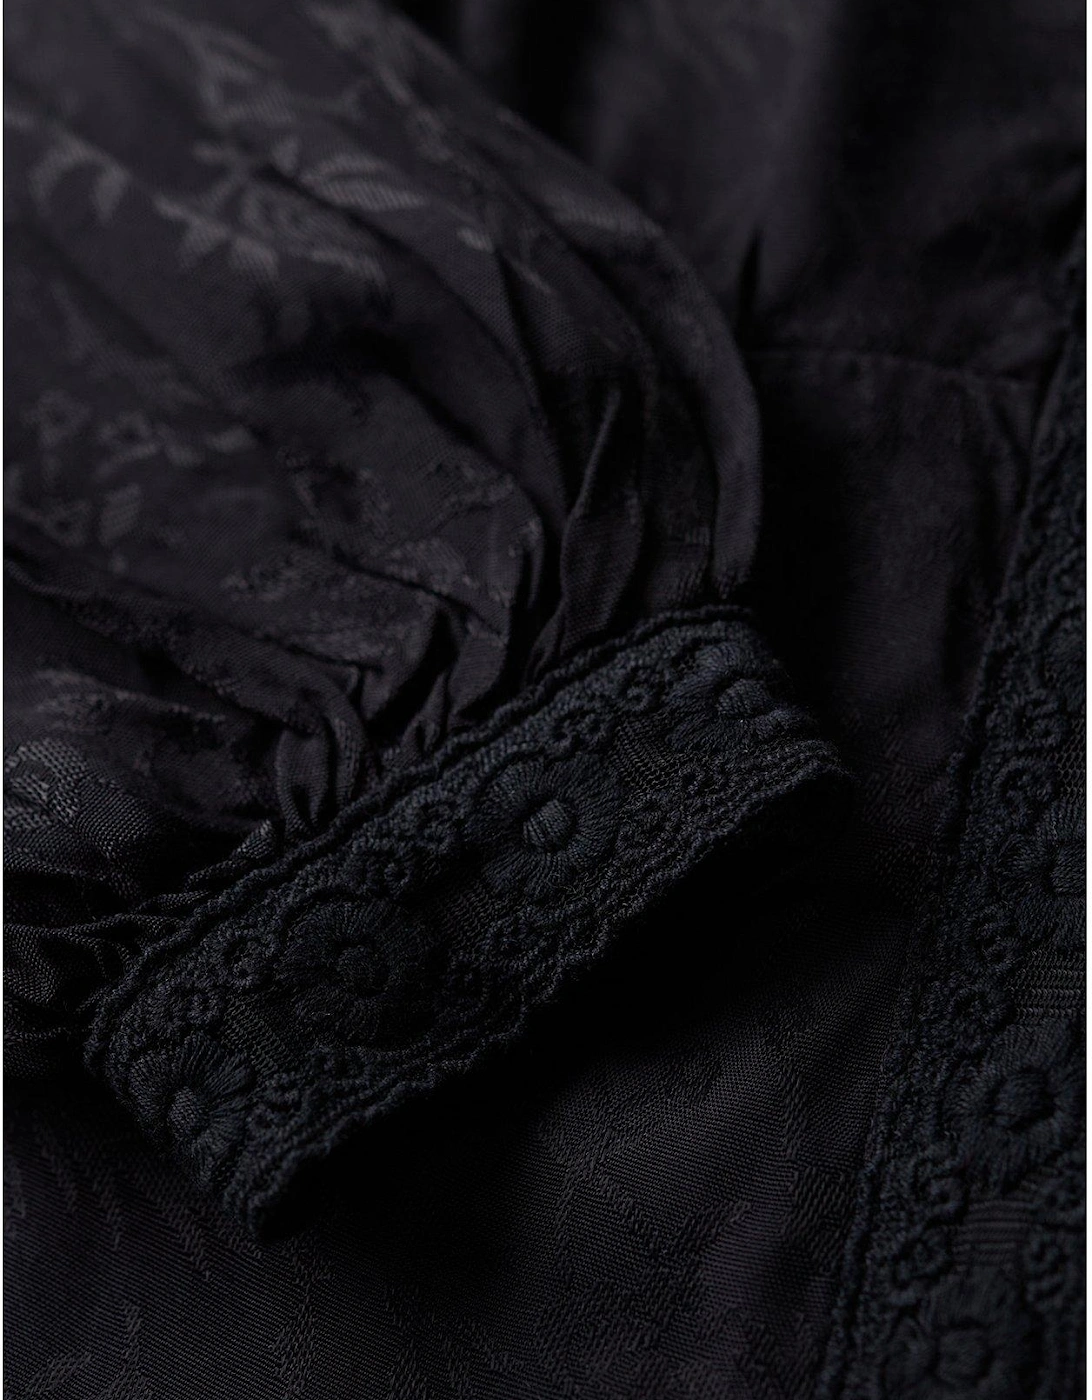 Lace Trim Midi Dress - Black